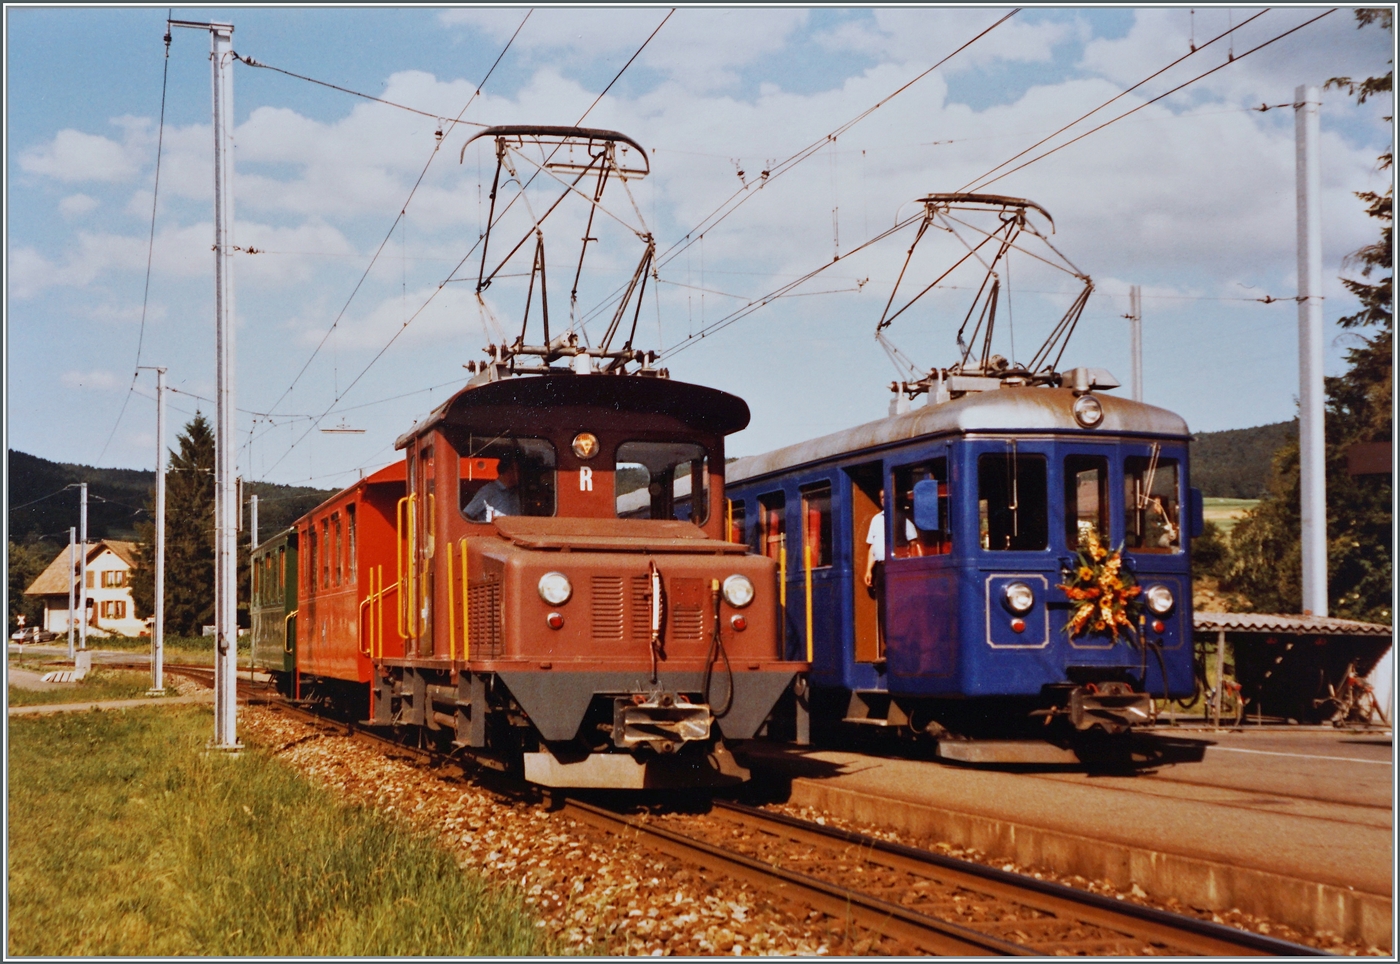 Für den Geschsellschaftsverkehr hielt die WSB zwei Züge vor:  S' farbige Bähnli  (links) und  s'blaue Bähnli  rechts. Beide zeigen sich im Sommer in Gontenschwil.

14. Juli 1984